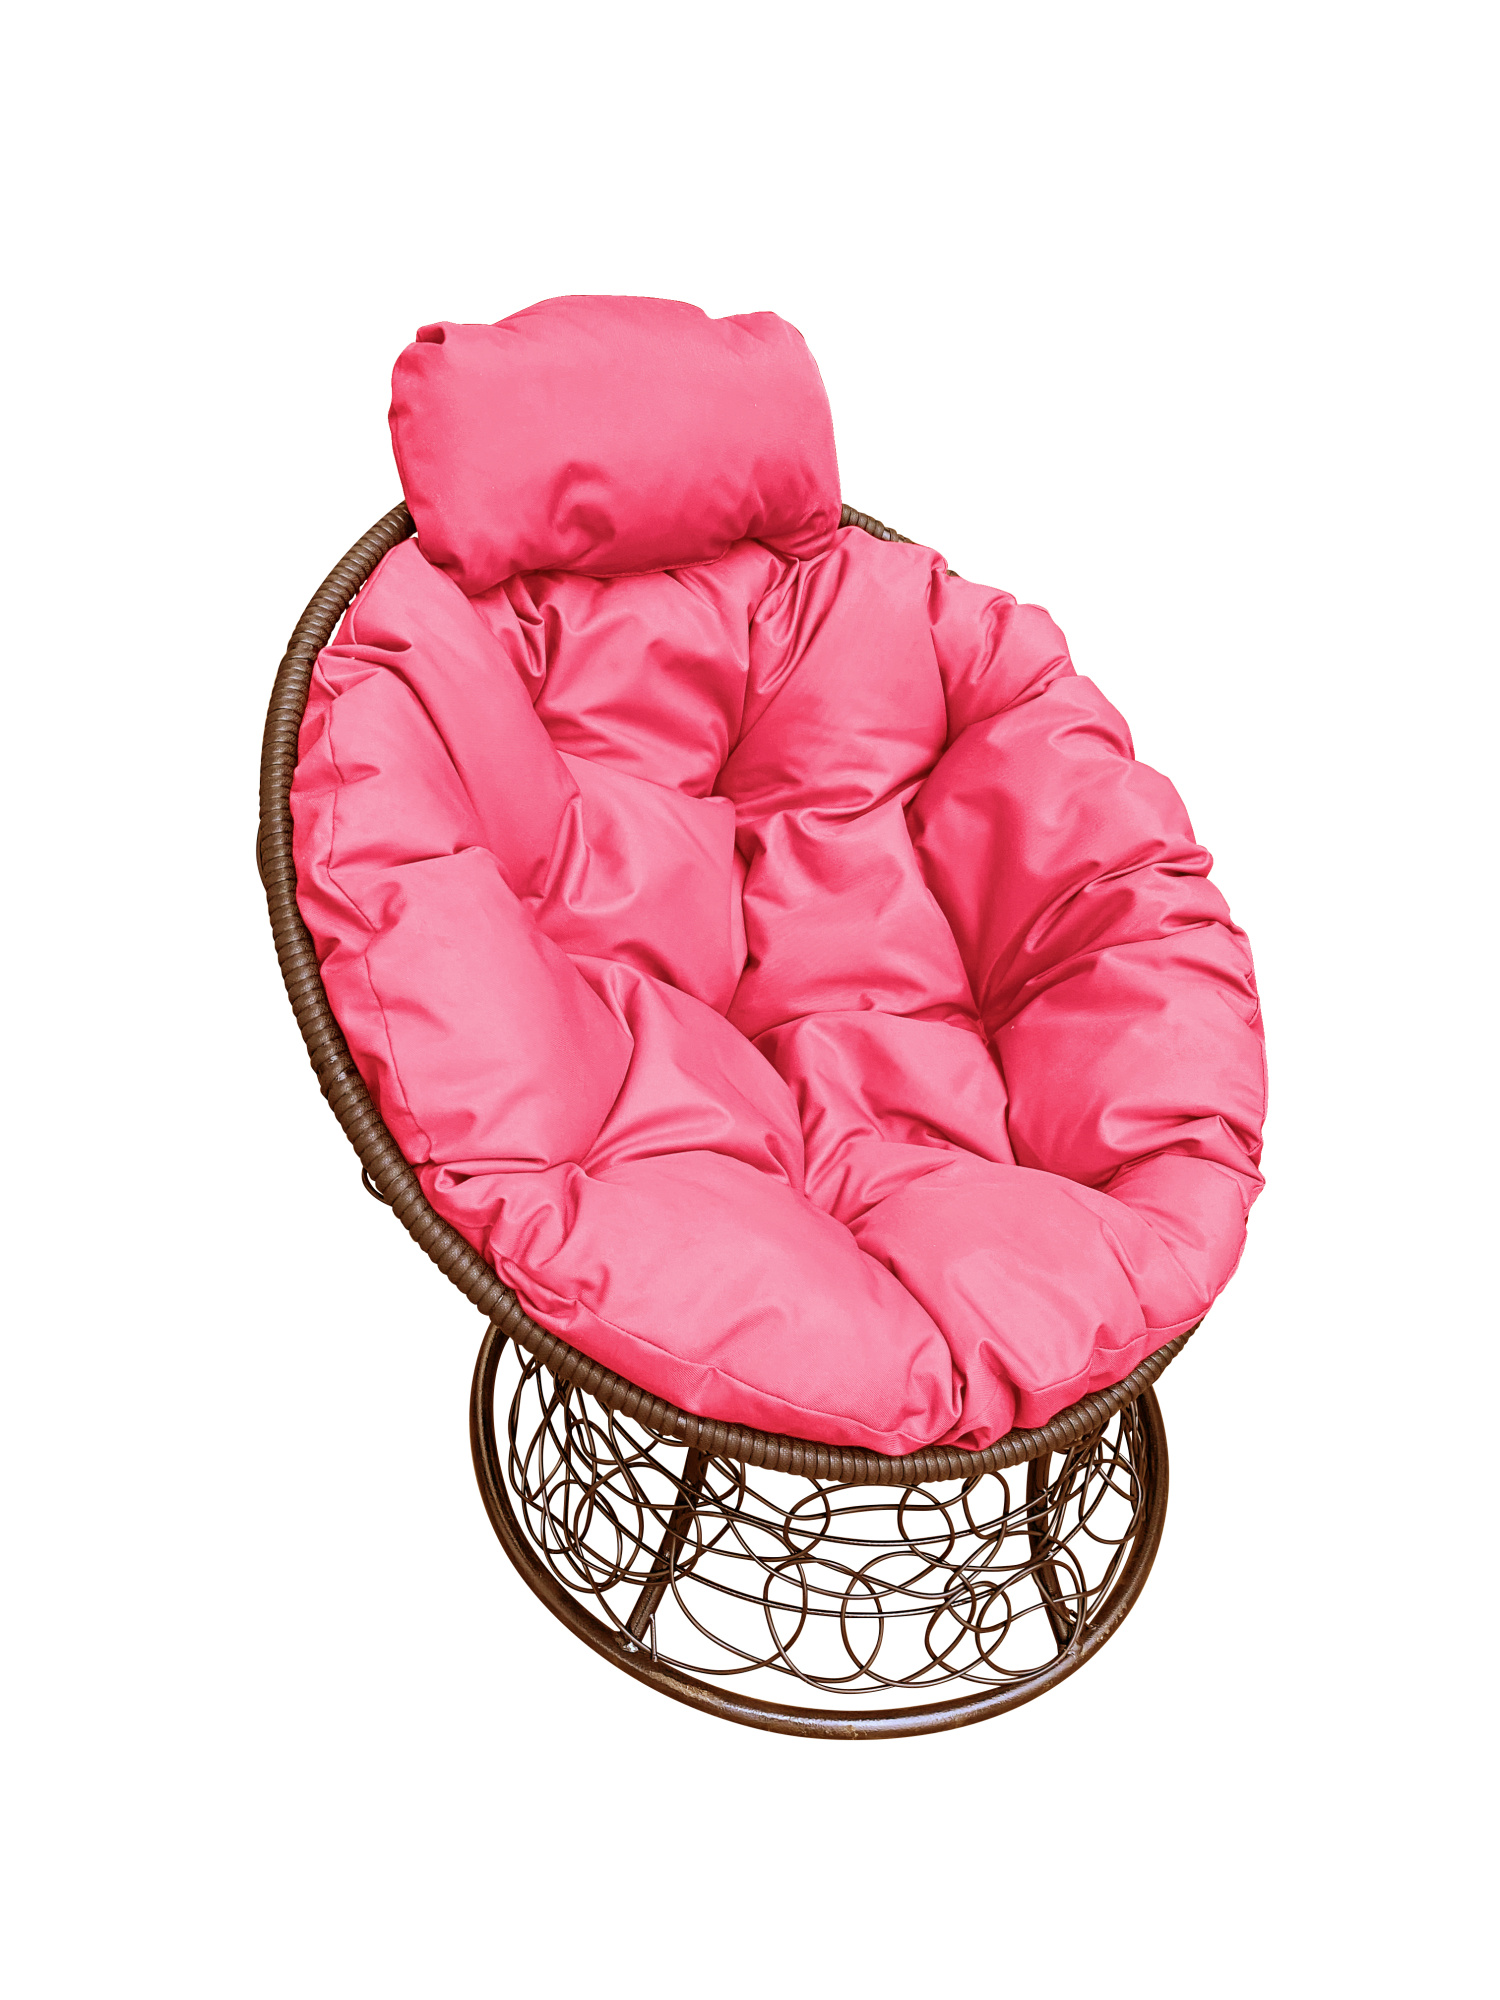 

Кресло садовое M-Group Папасан мини коричневое ротанг 12070208 розовая подушка, Коричневый, Папасан